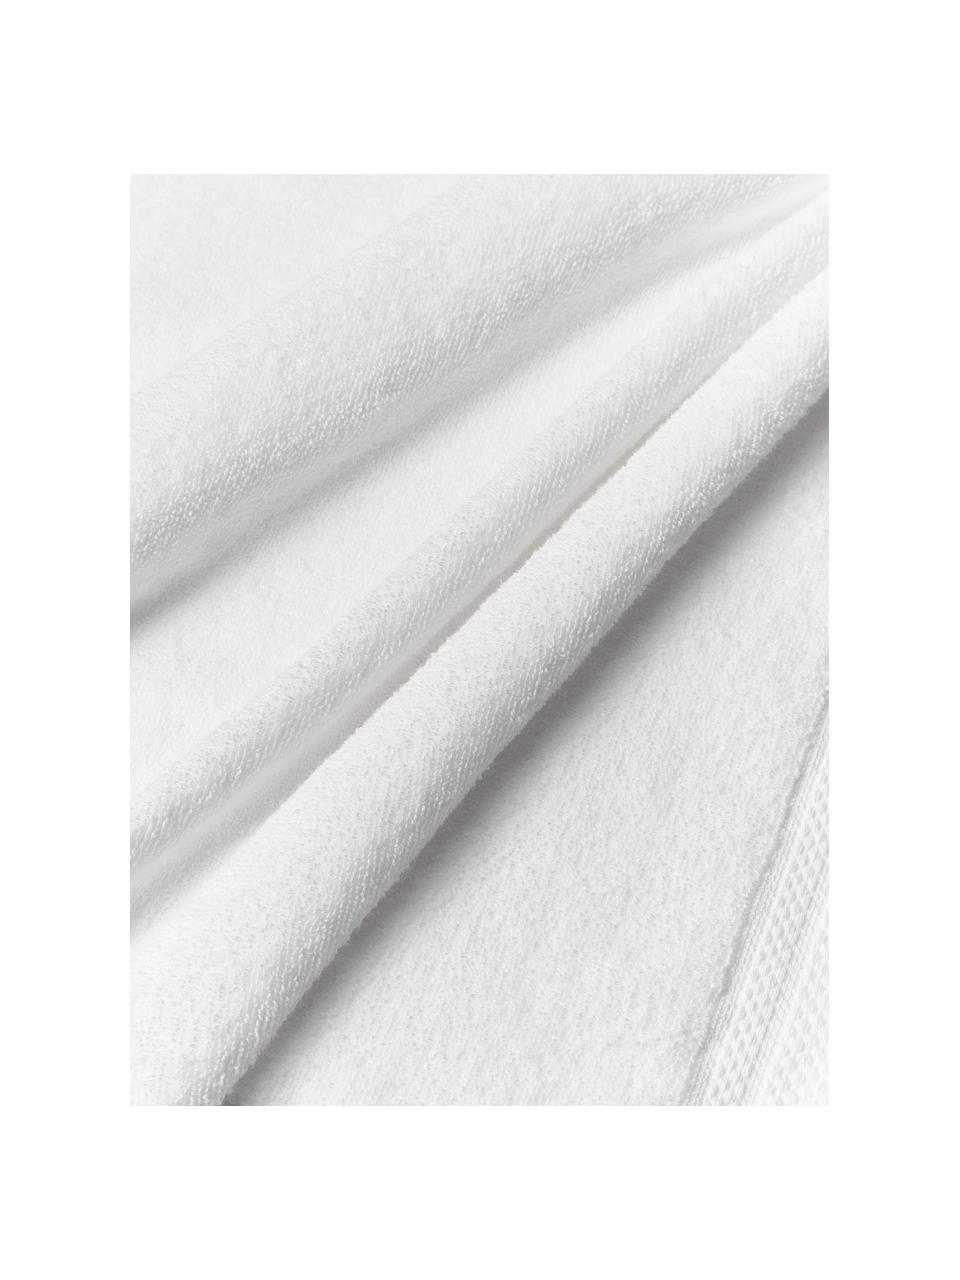 Handtuch Premium aus Bio-Baumwolle in verschiedenen Größen, 100 % Bio-Baumwolle, GOTS-zertifiziert (von GCL International, GCL-300517)
 Schwere Qualität, 600 g/m², Weiß, Handtuch, B 50 x L 100 cm